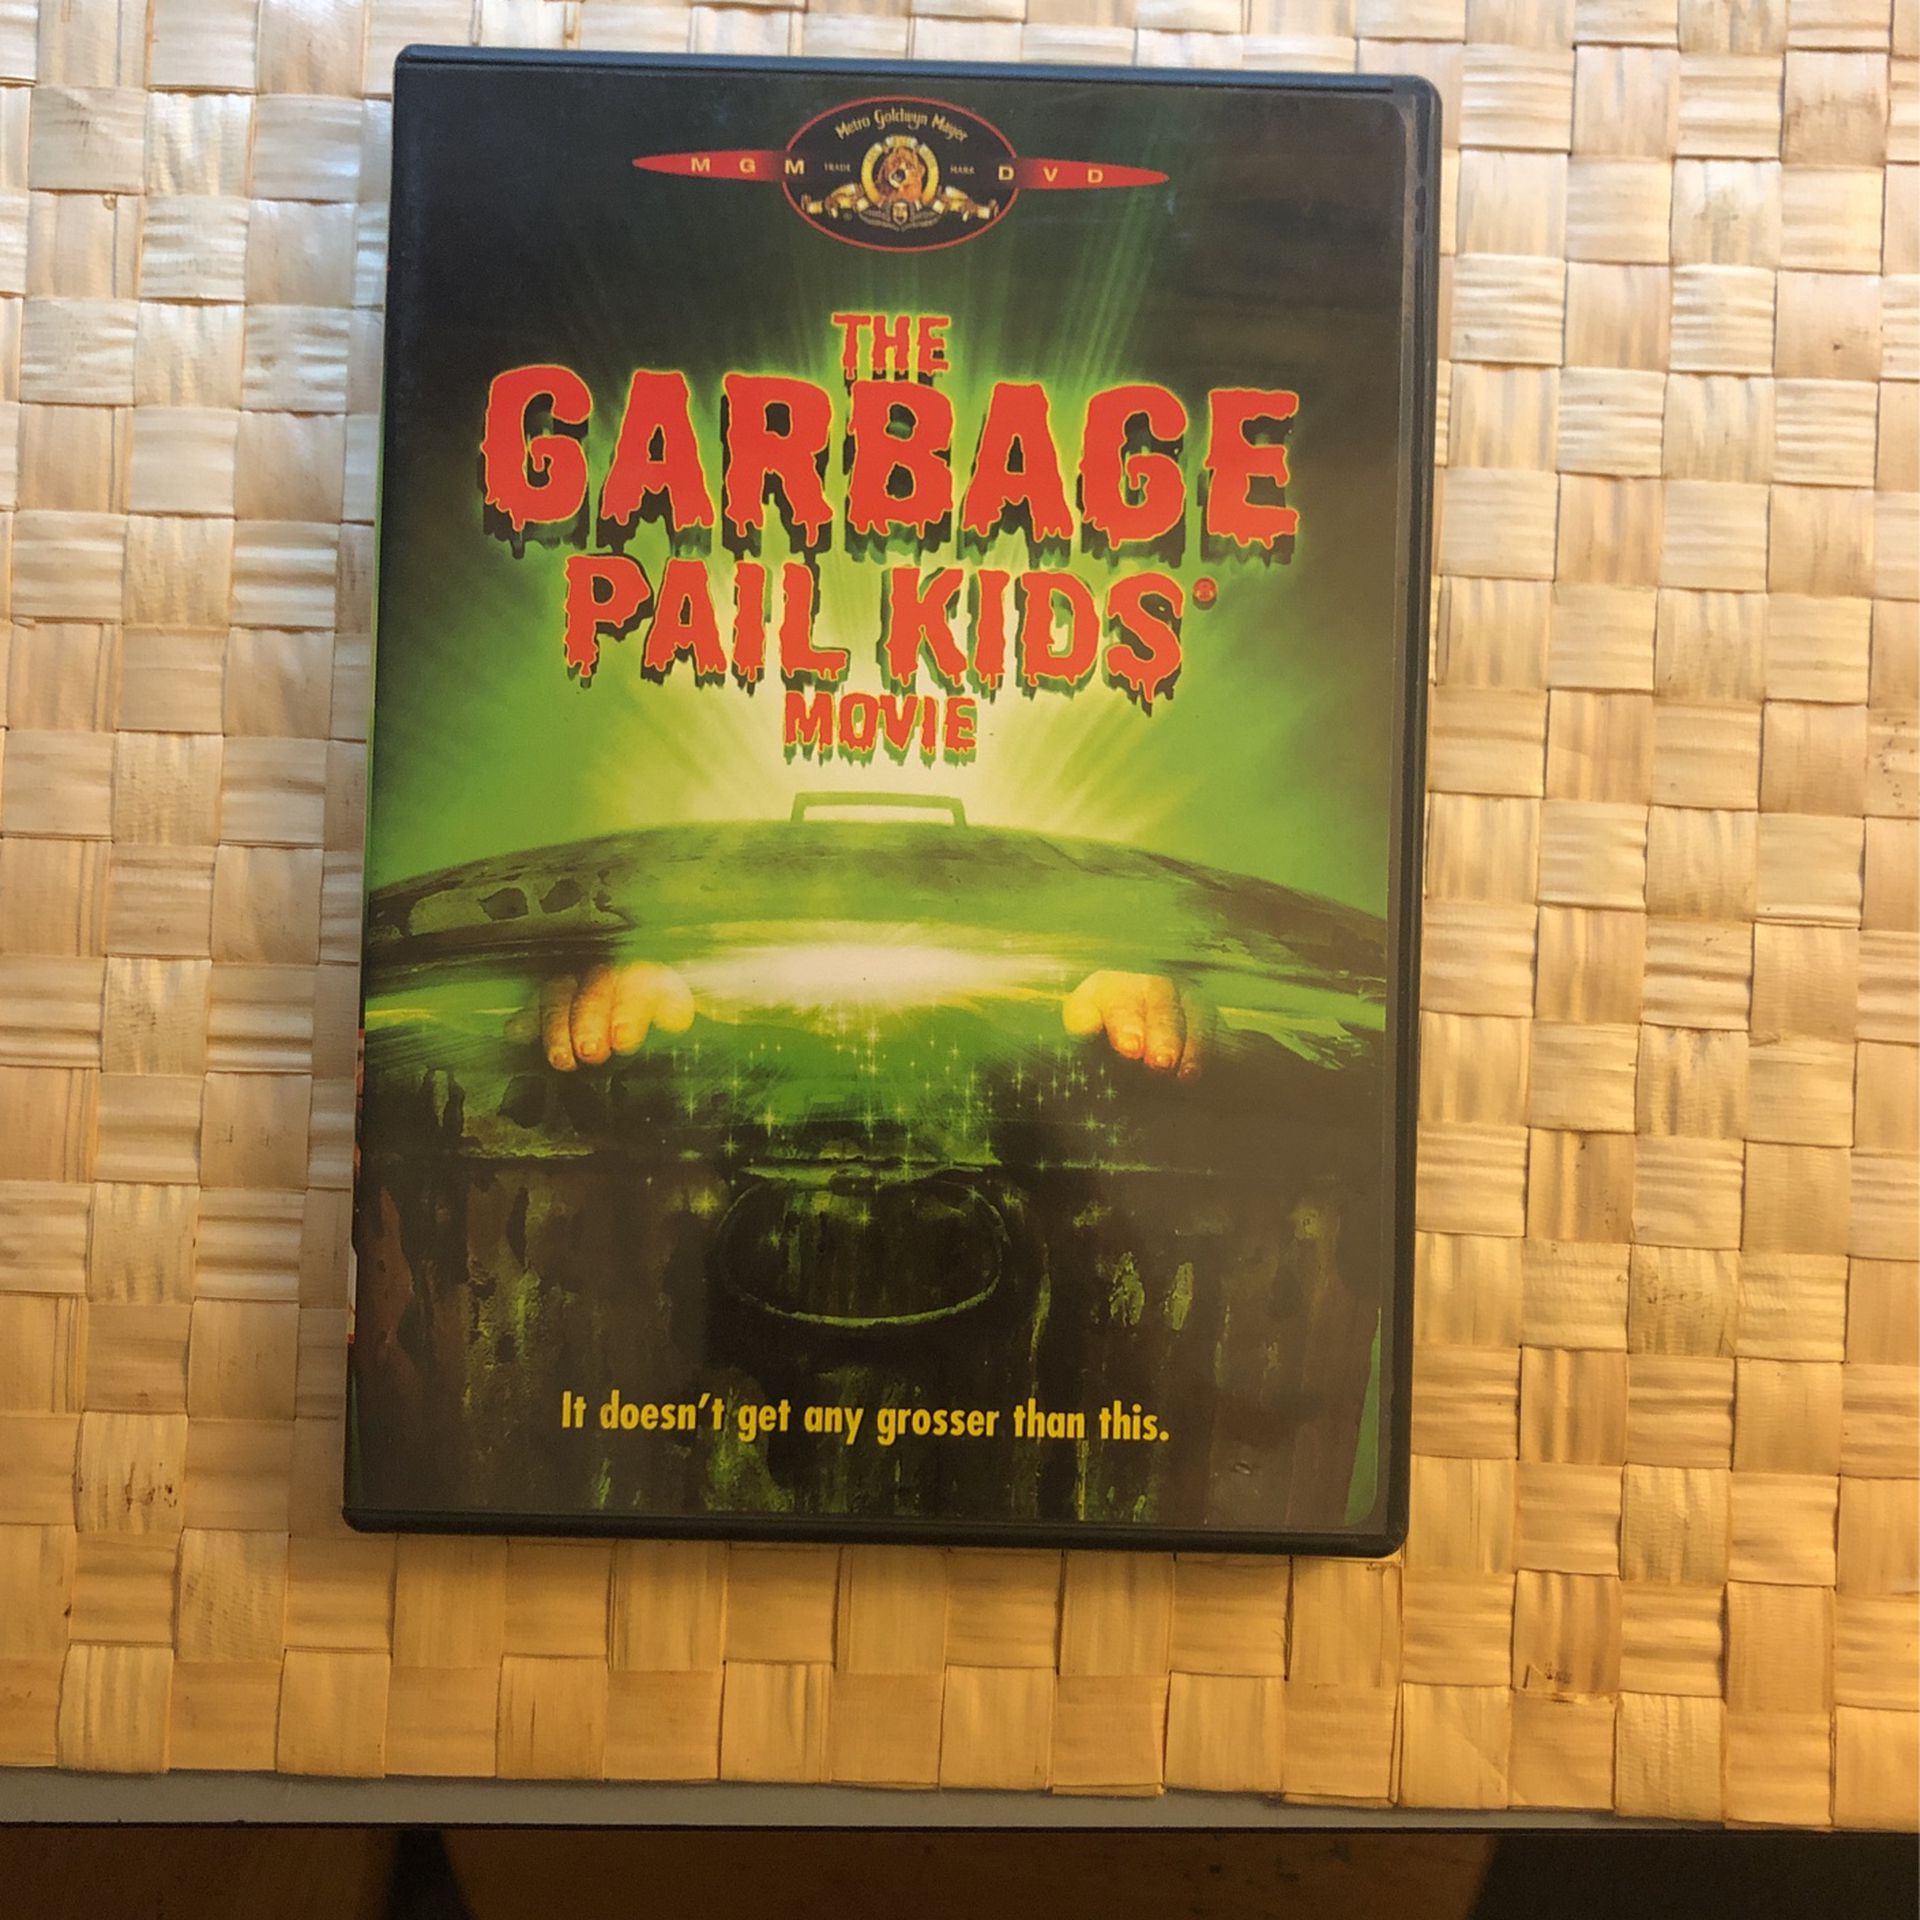 Garbage pail kids movie DVD CD